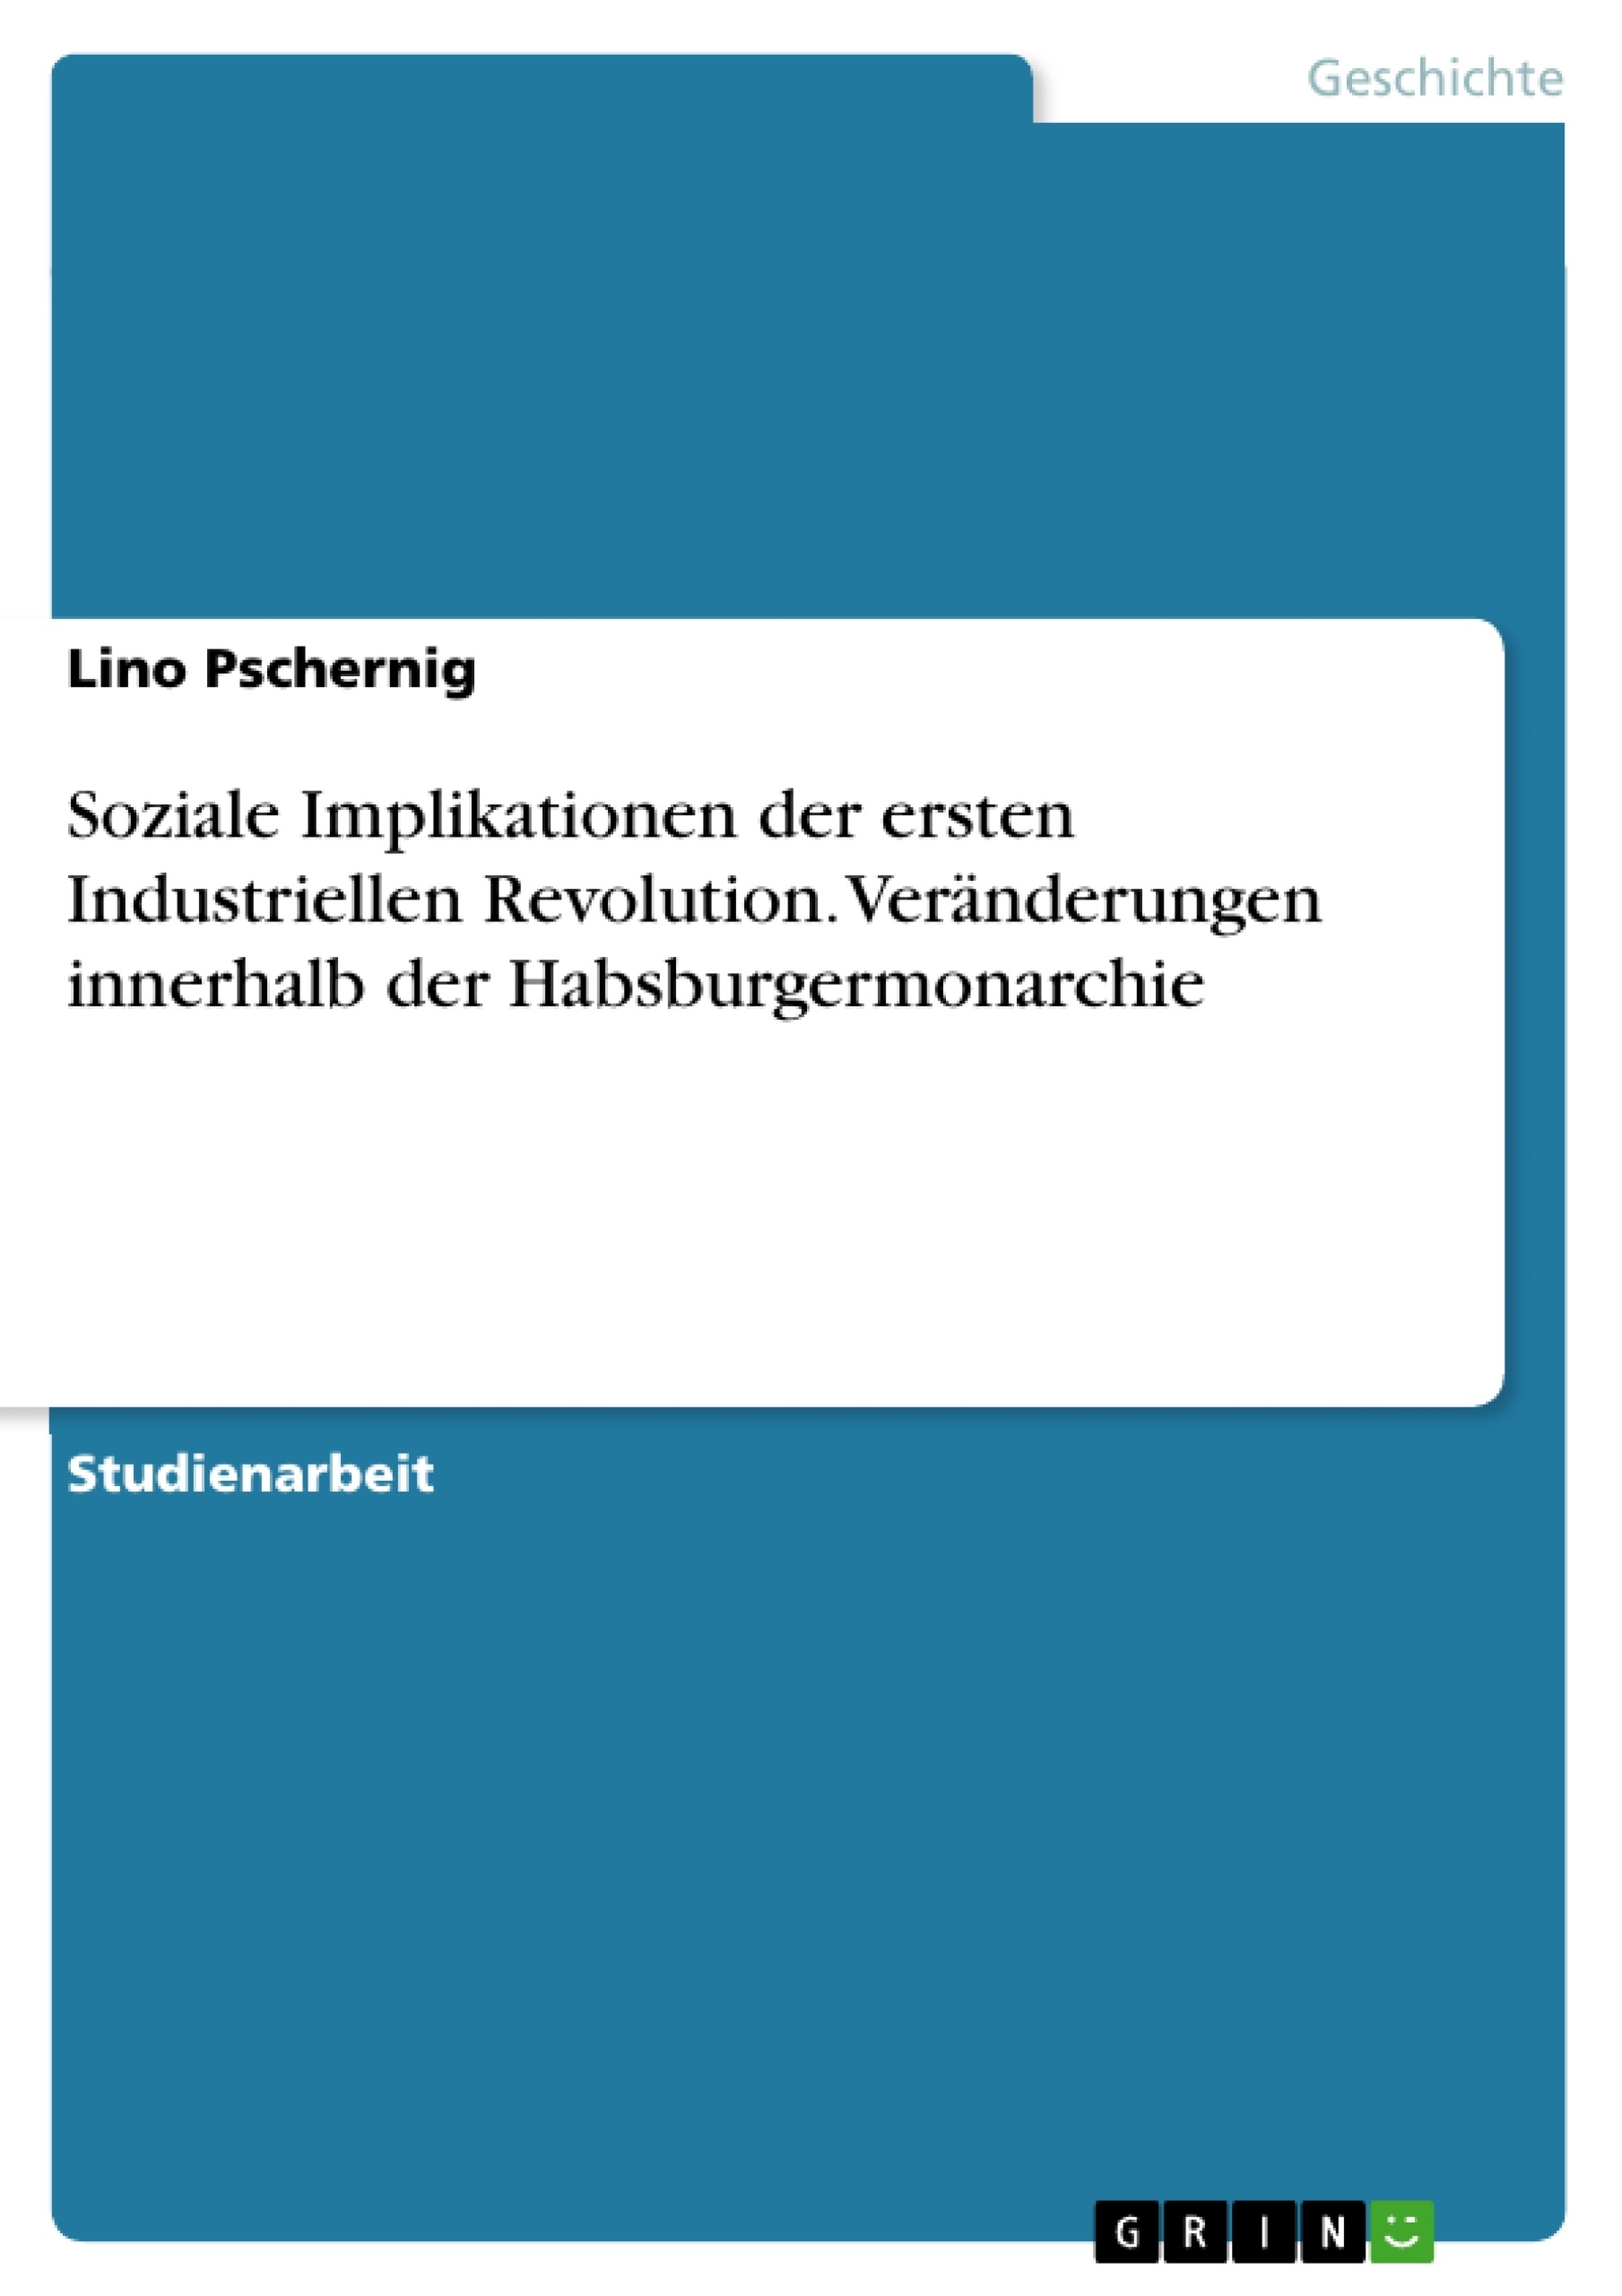 Título: Soziale Implikationen der ersten Industriellen Revolution. Veränderungen innerhalb der Habsburgermonarchie